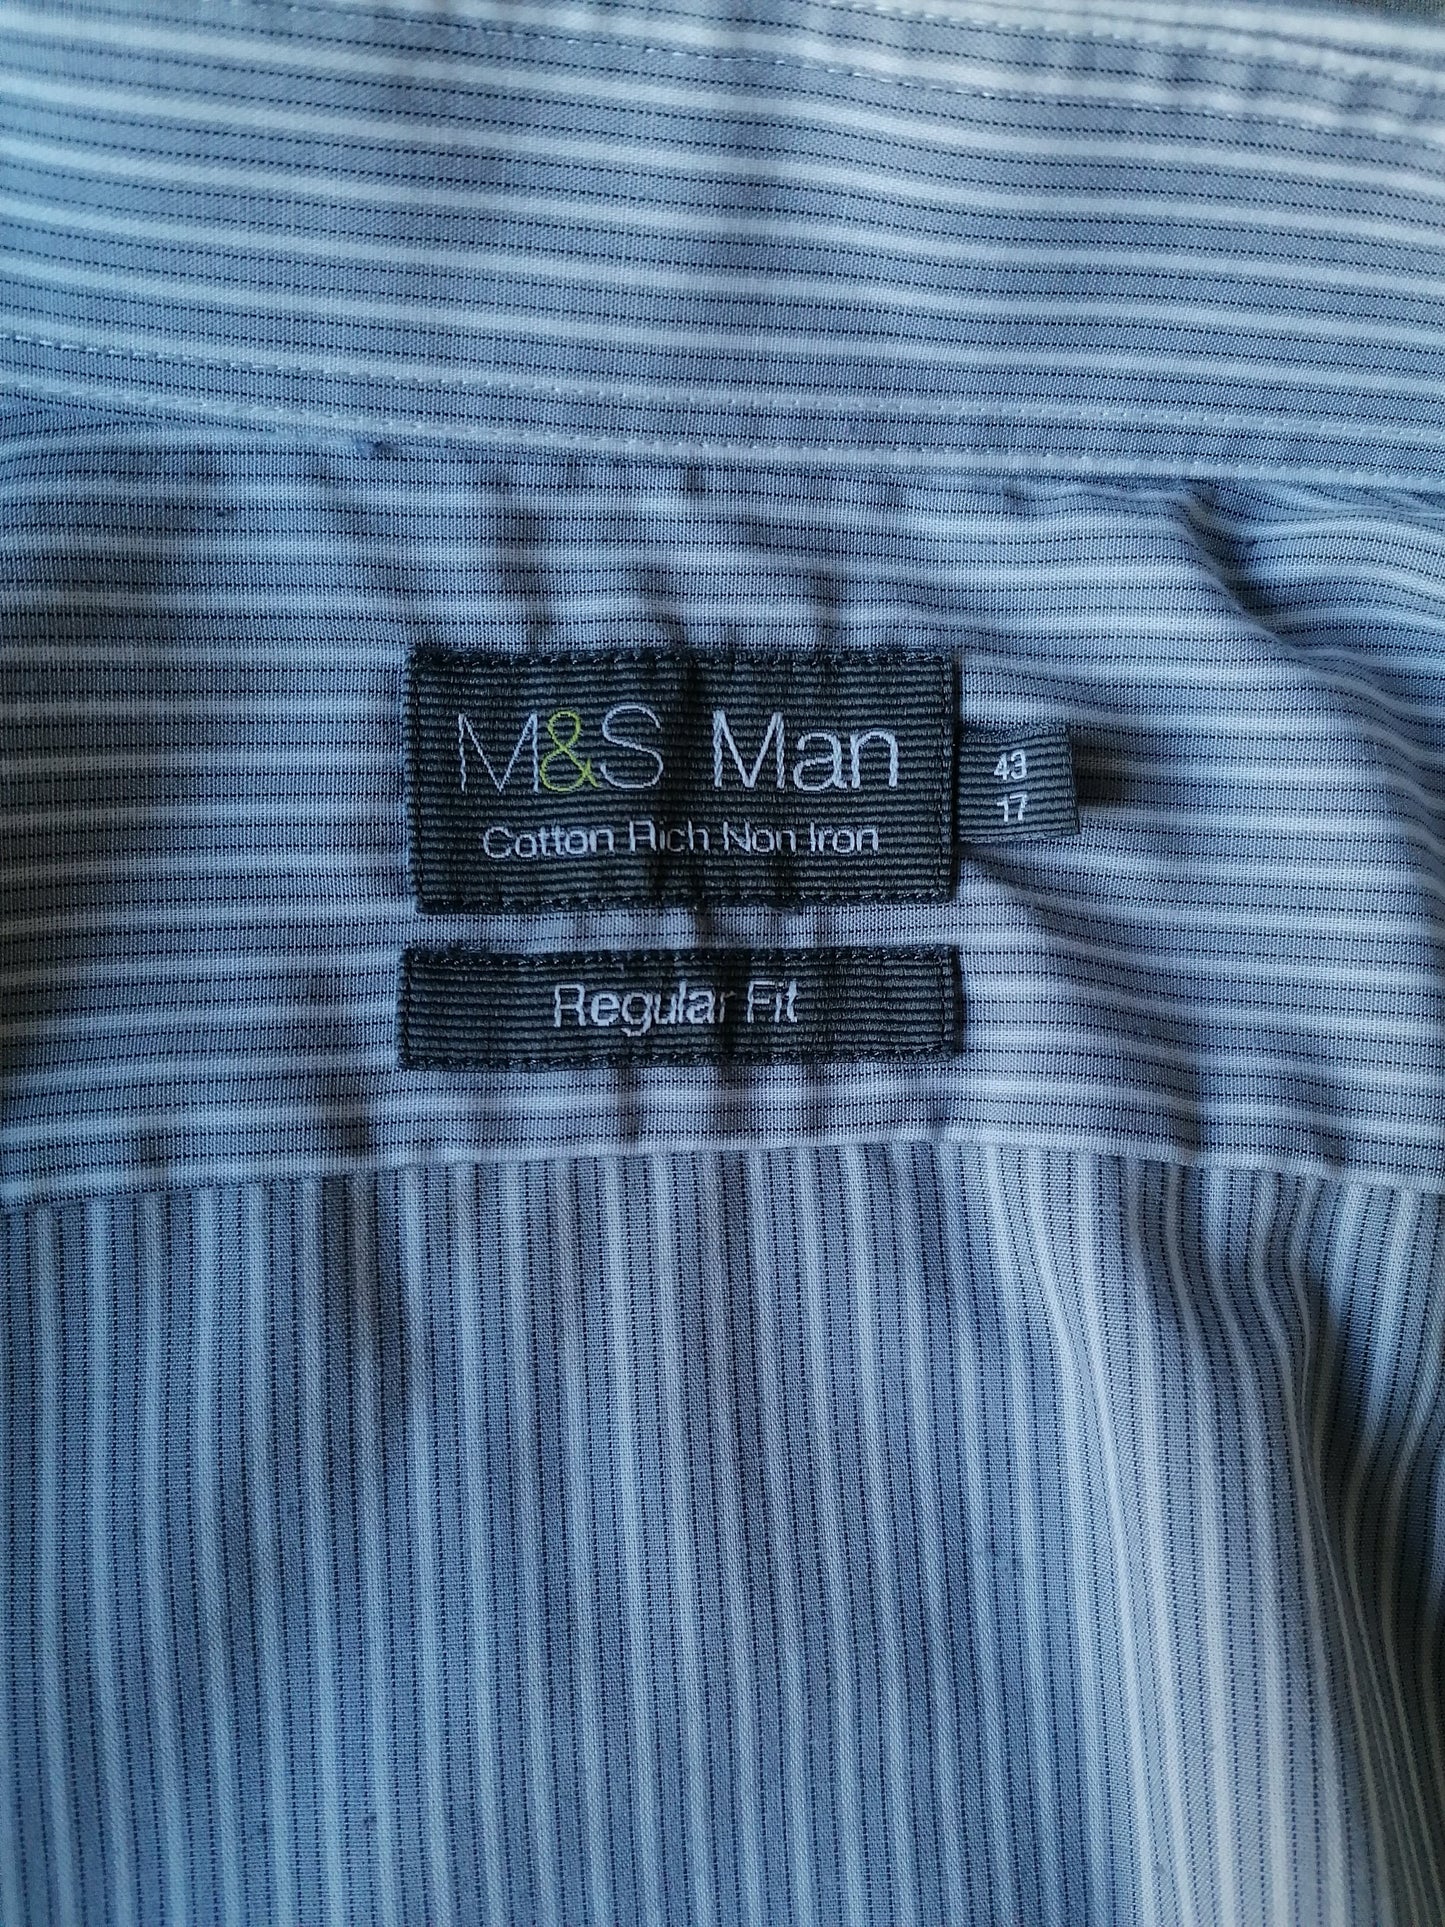 Camicia M&S Man (Marks & Spencer). Strisce bianche grigie. Dimensione 43 / XL. Adattamento regolare.